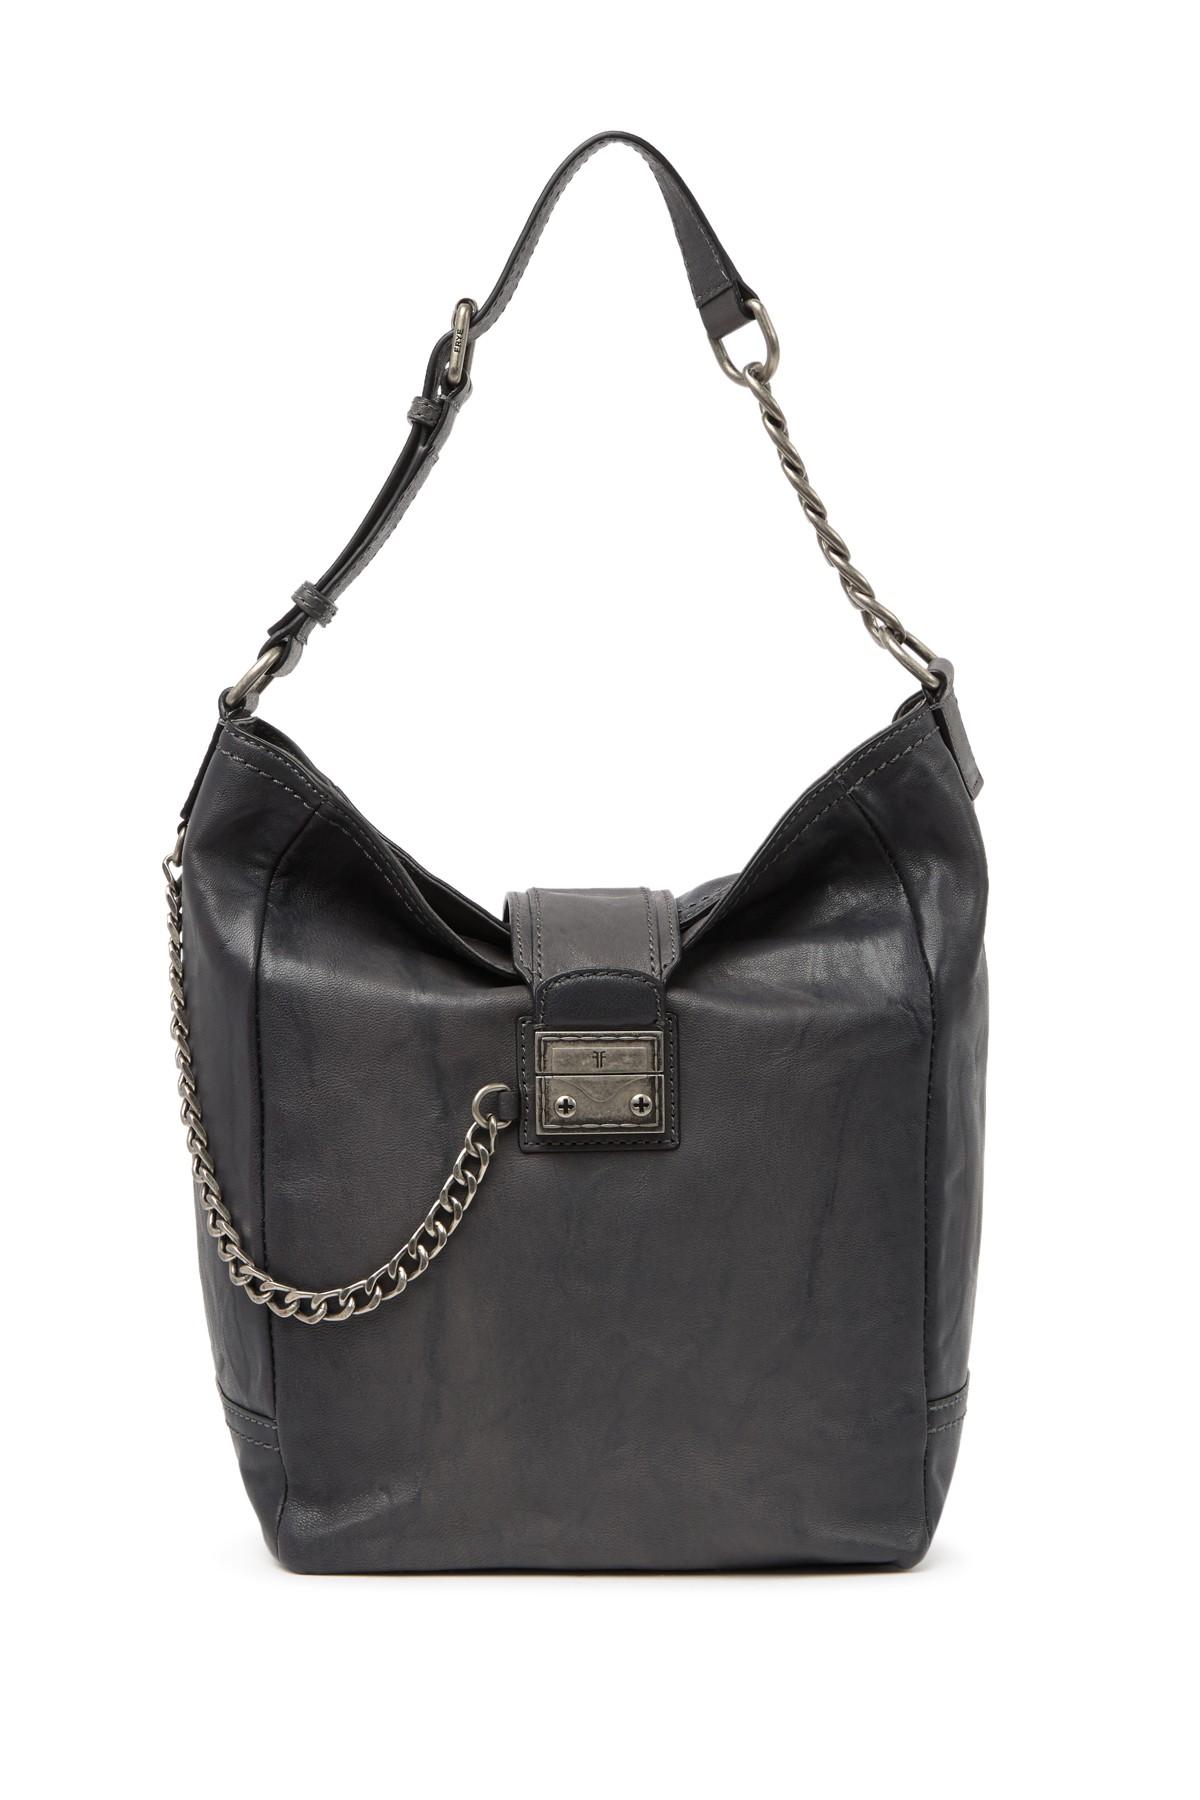 Frye Leather Ella Hobo Bag in Carbon (Black) - Save 62% - Lyst